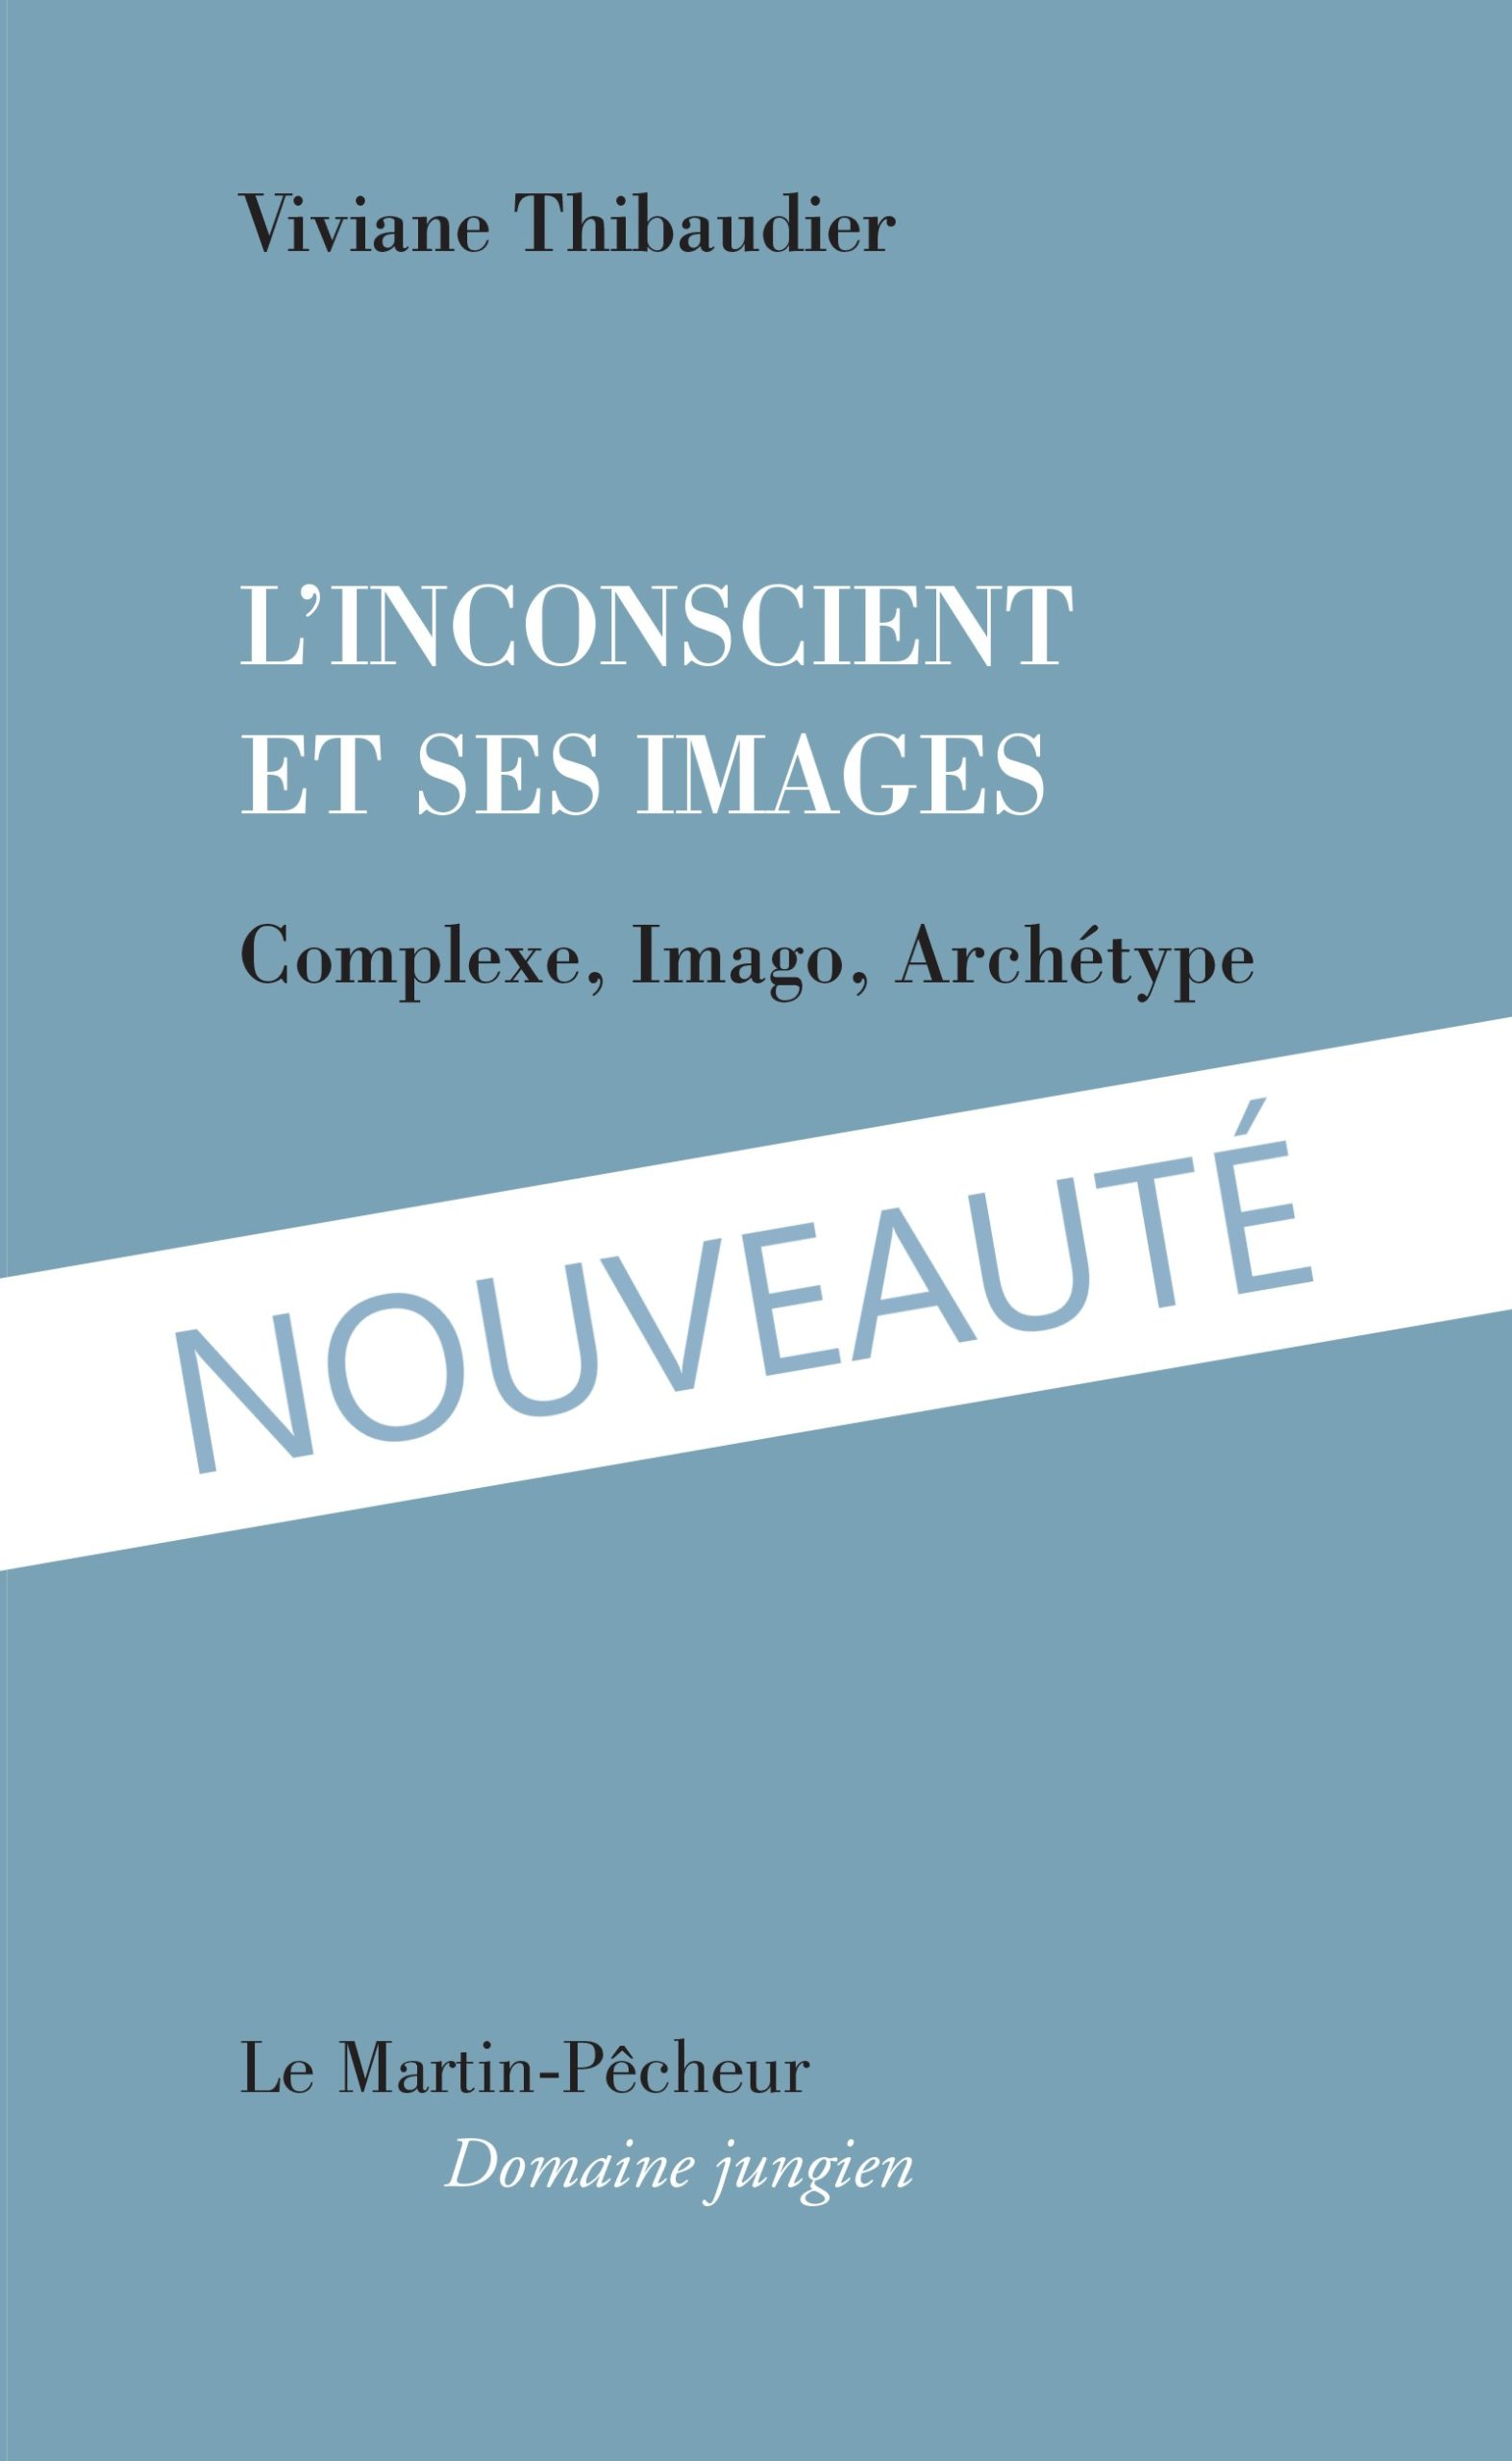 L’Inconscient et ses images, Complexe, Imago, Archétype, Éditions Le Martin-Pêcheur / Domaine Jungien, 2020